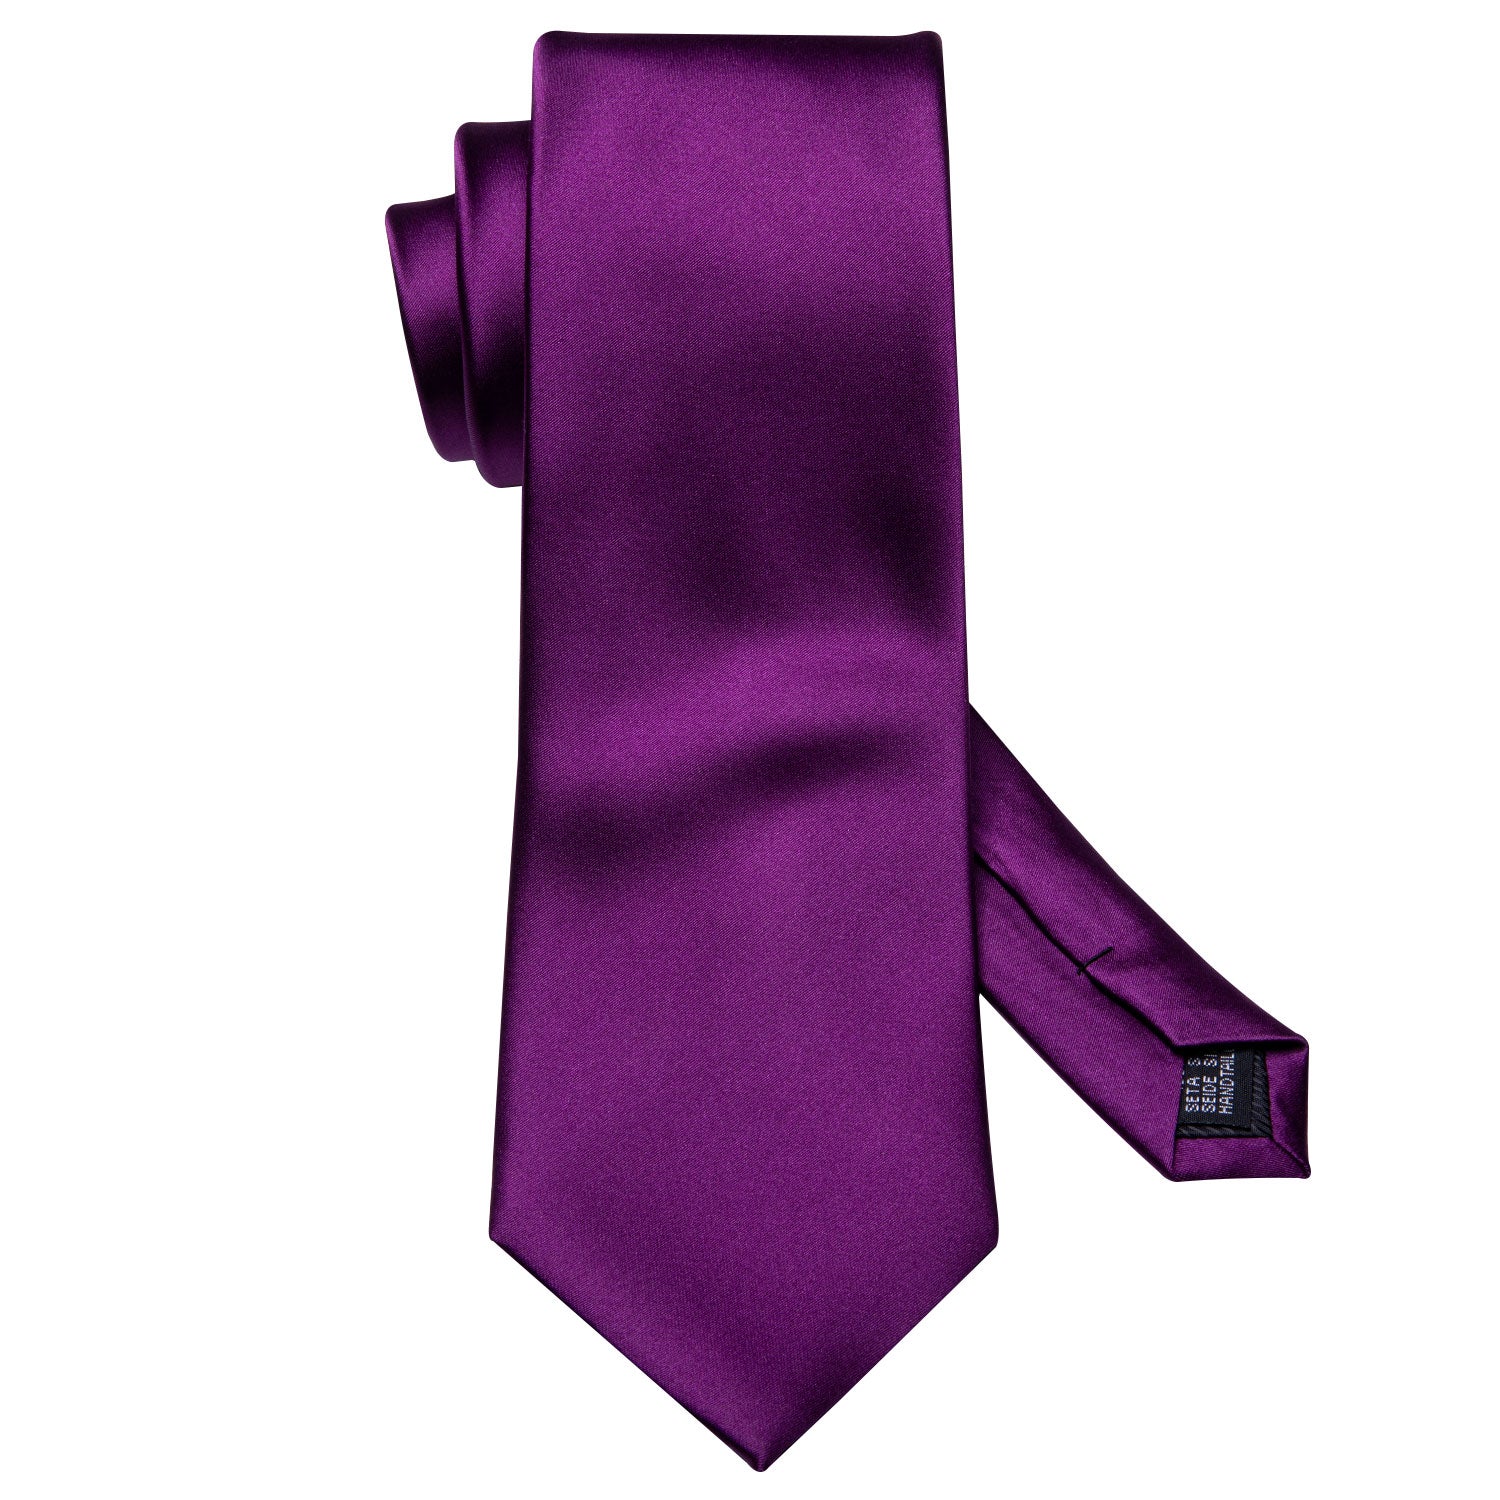 Barry.wang Purple Tie Pure Solid Necktie Handkerchief Cufflinks Set for Men